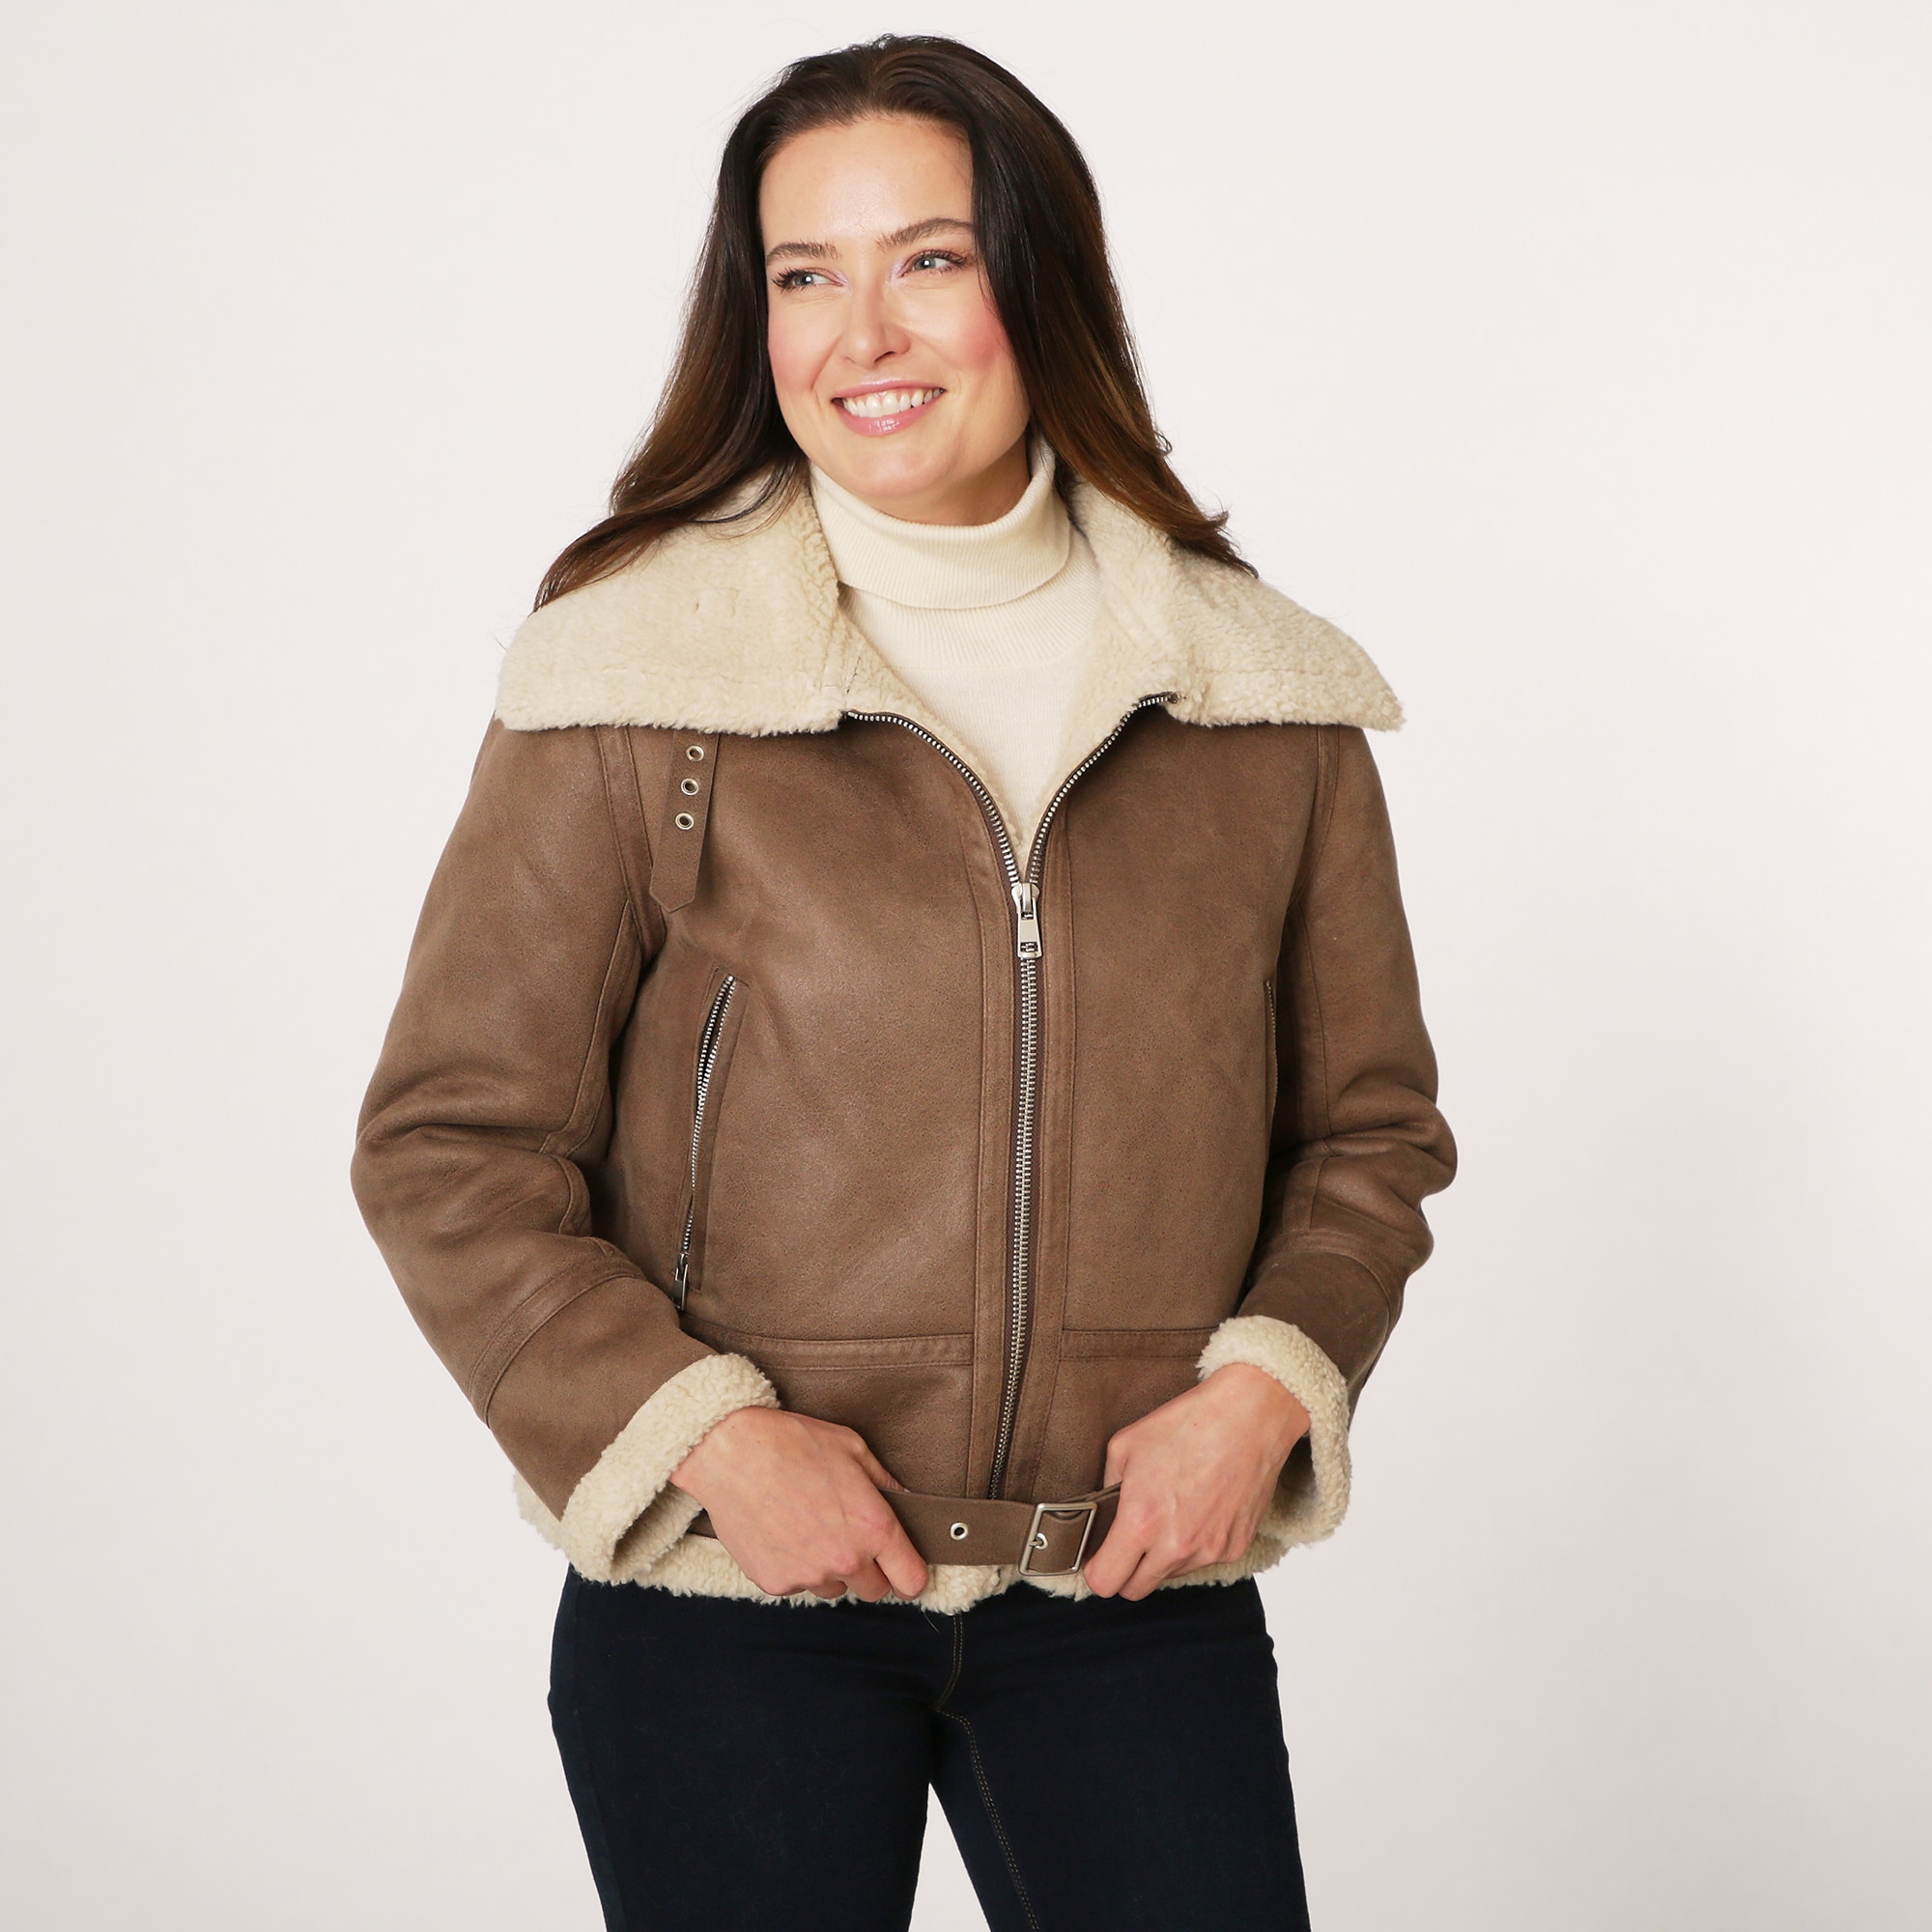 Clothing & Shoes - Jackets & Coats - Adrienne Landau 100% Wool